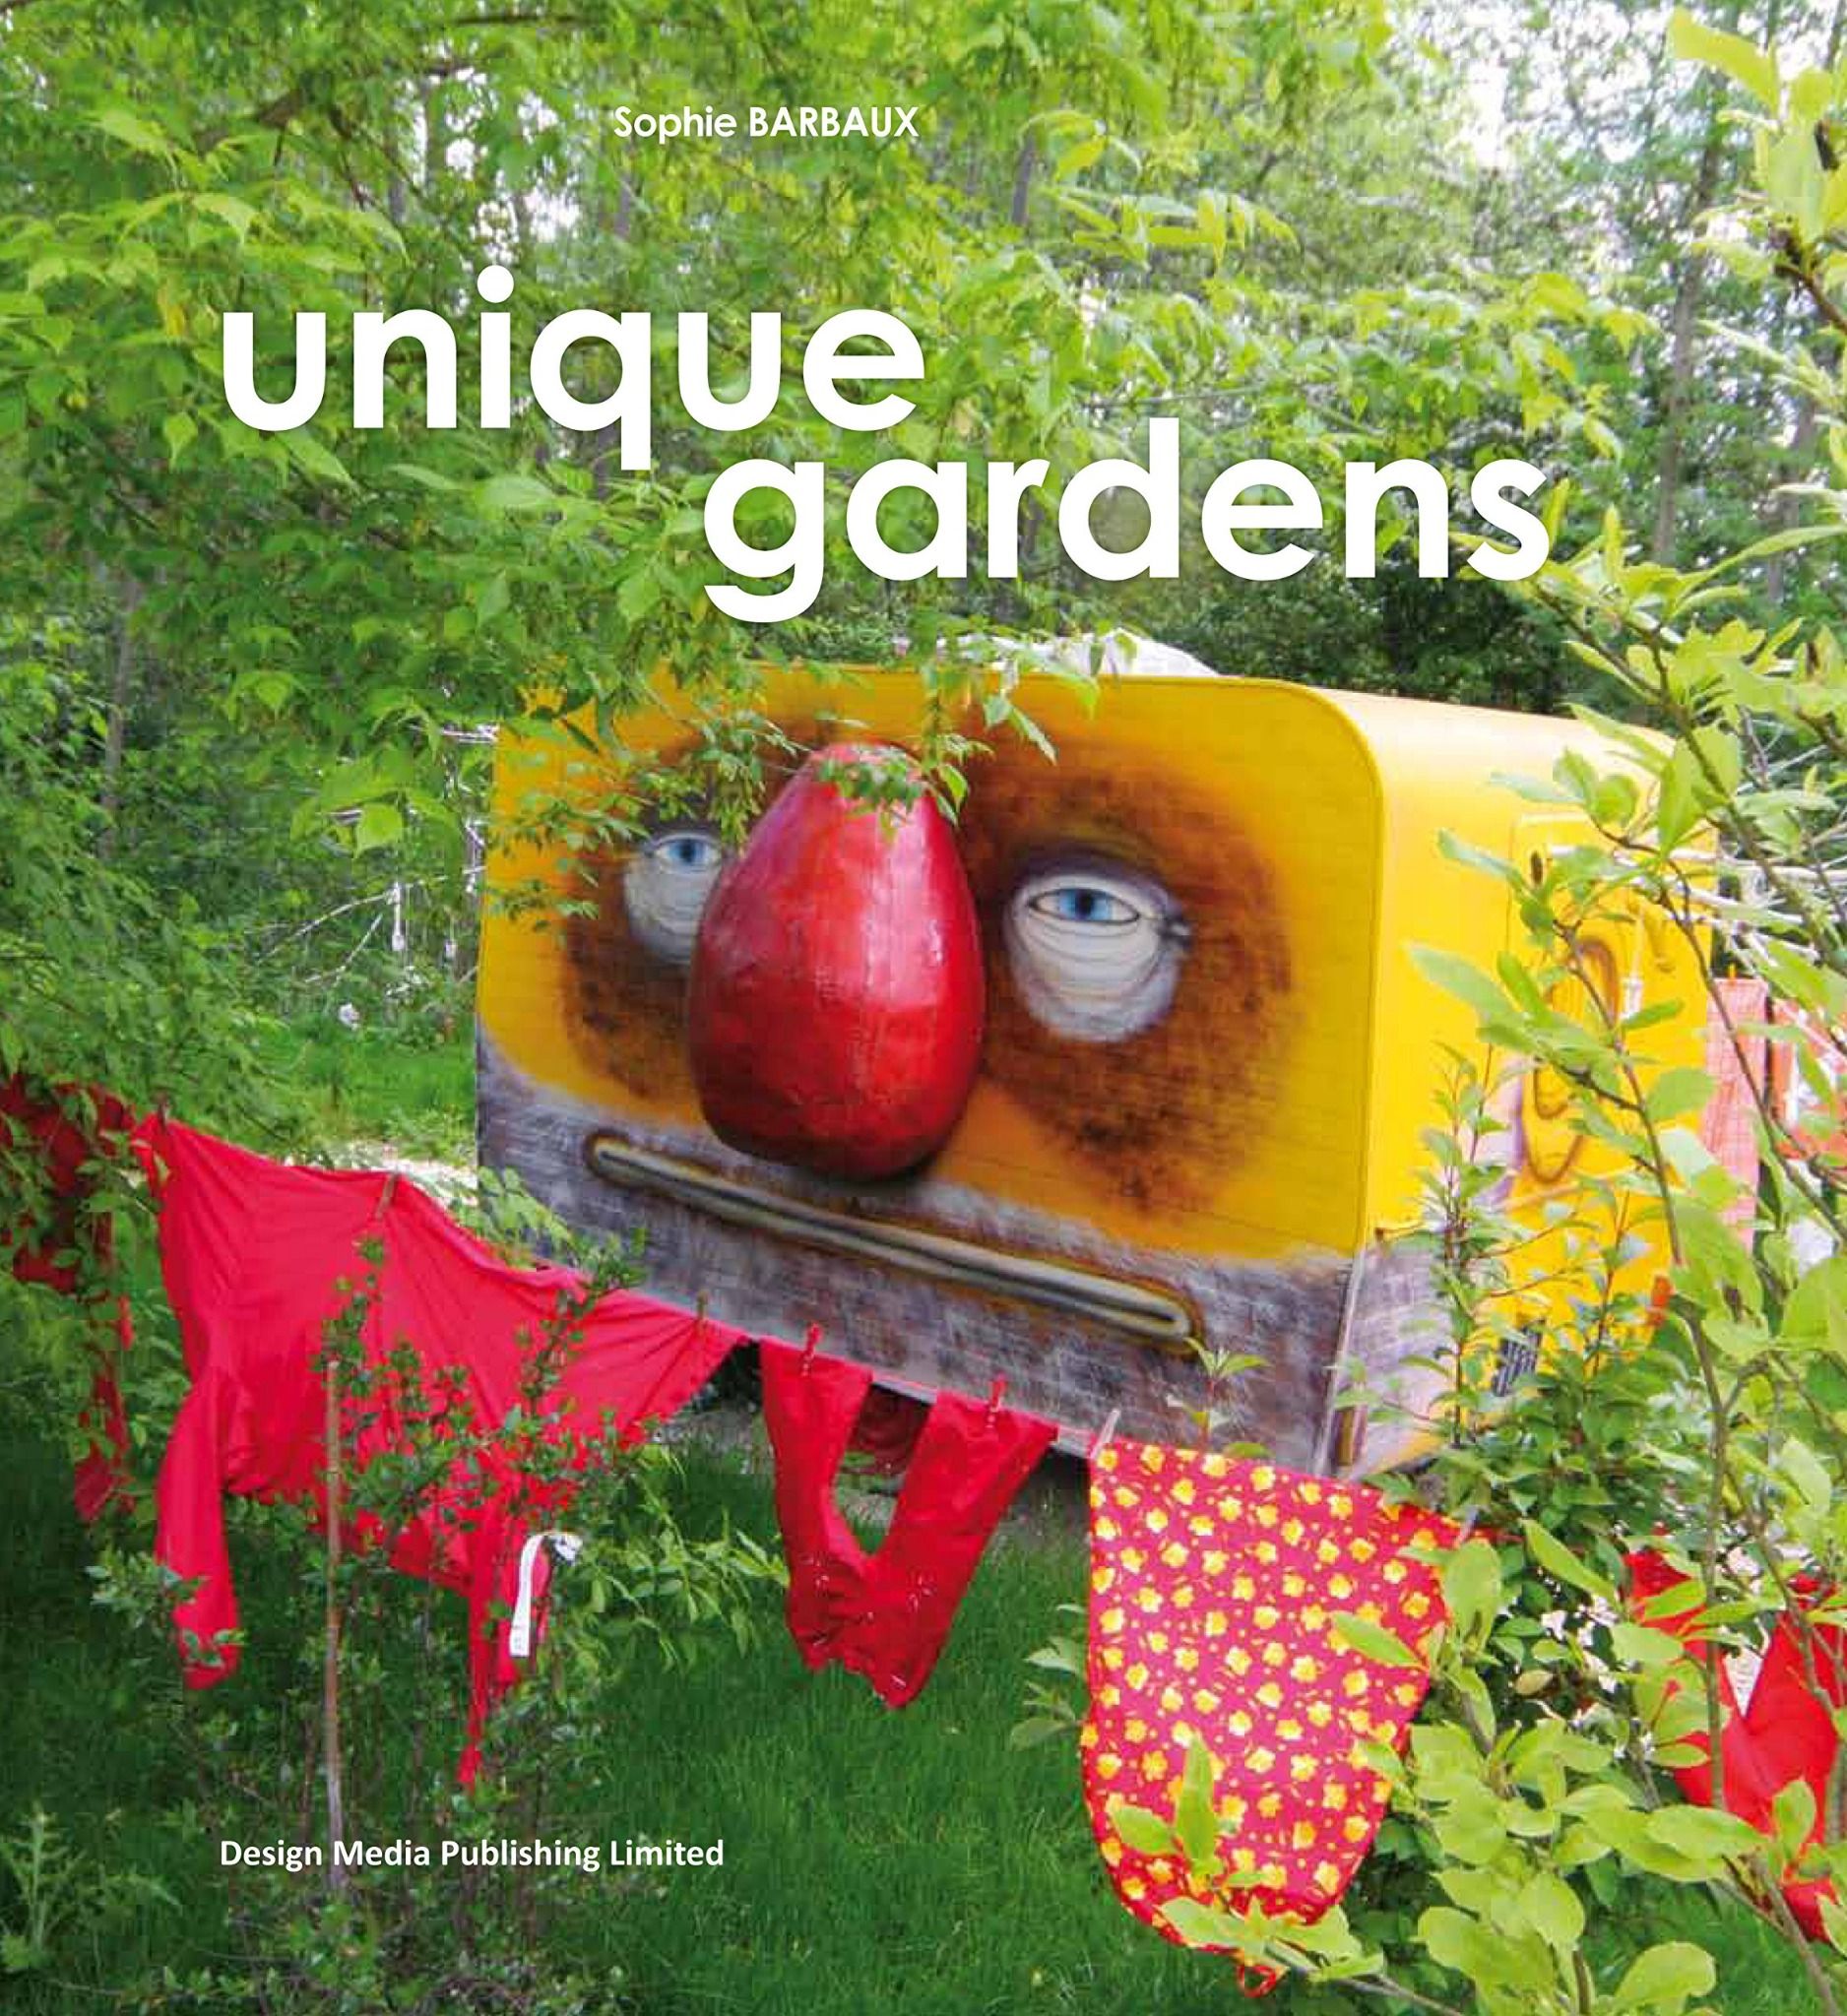  Unique Garden_Sophie Barbaux_9789881412379_Design Media Publishing Limited 